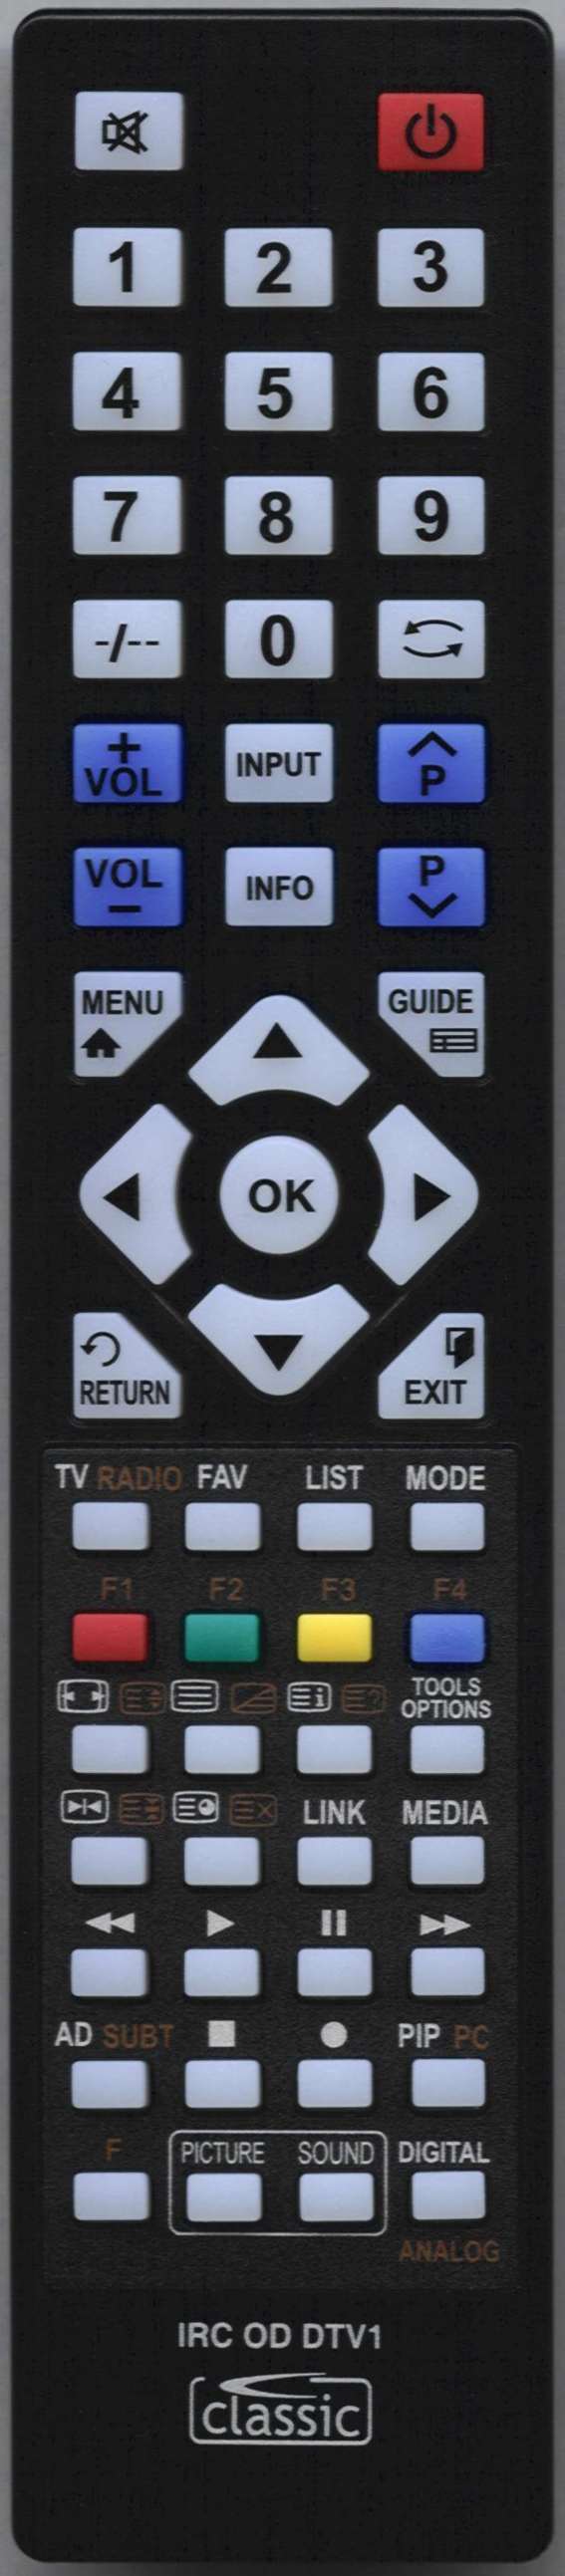 SONY KDL42W705B Remote Control Alternative